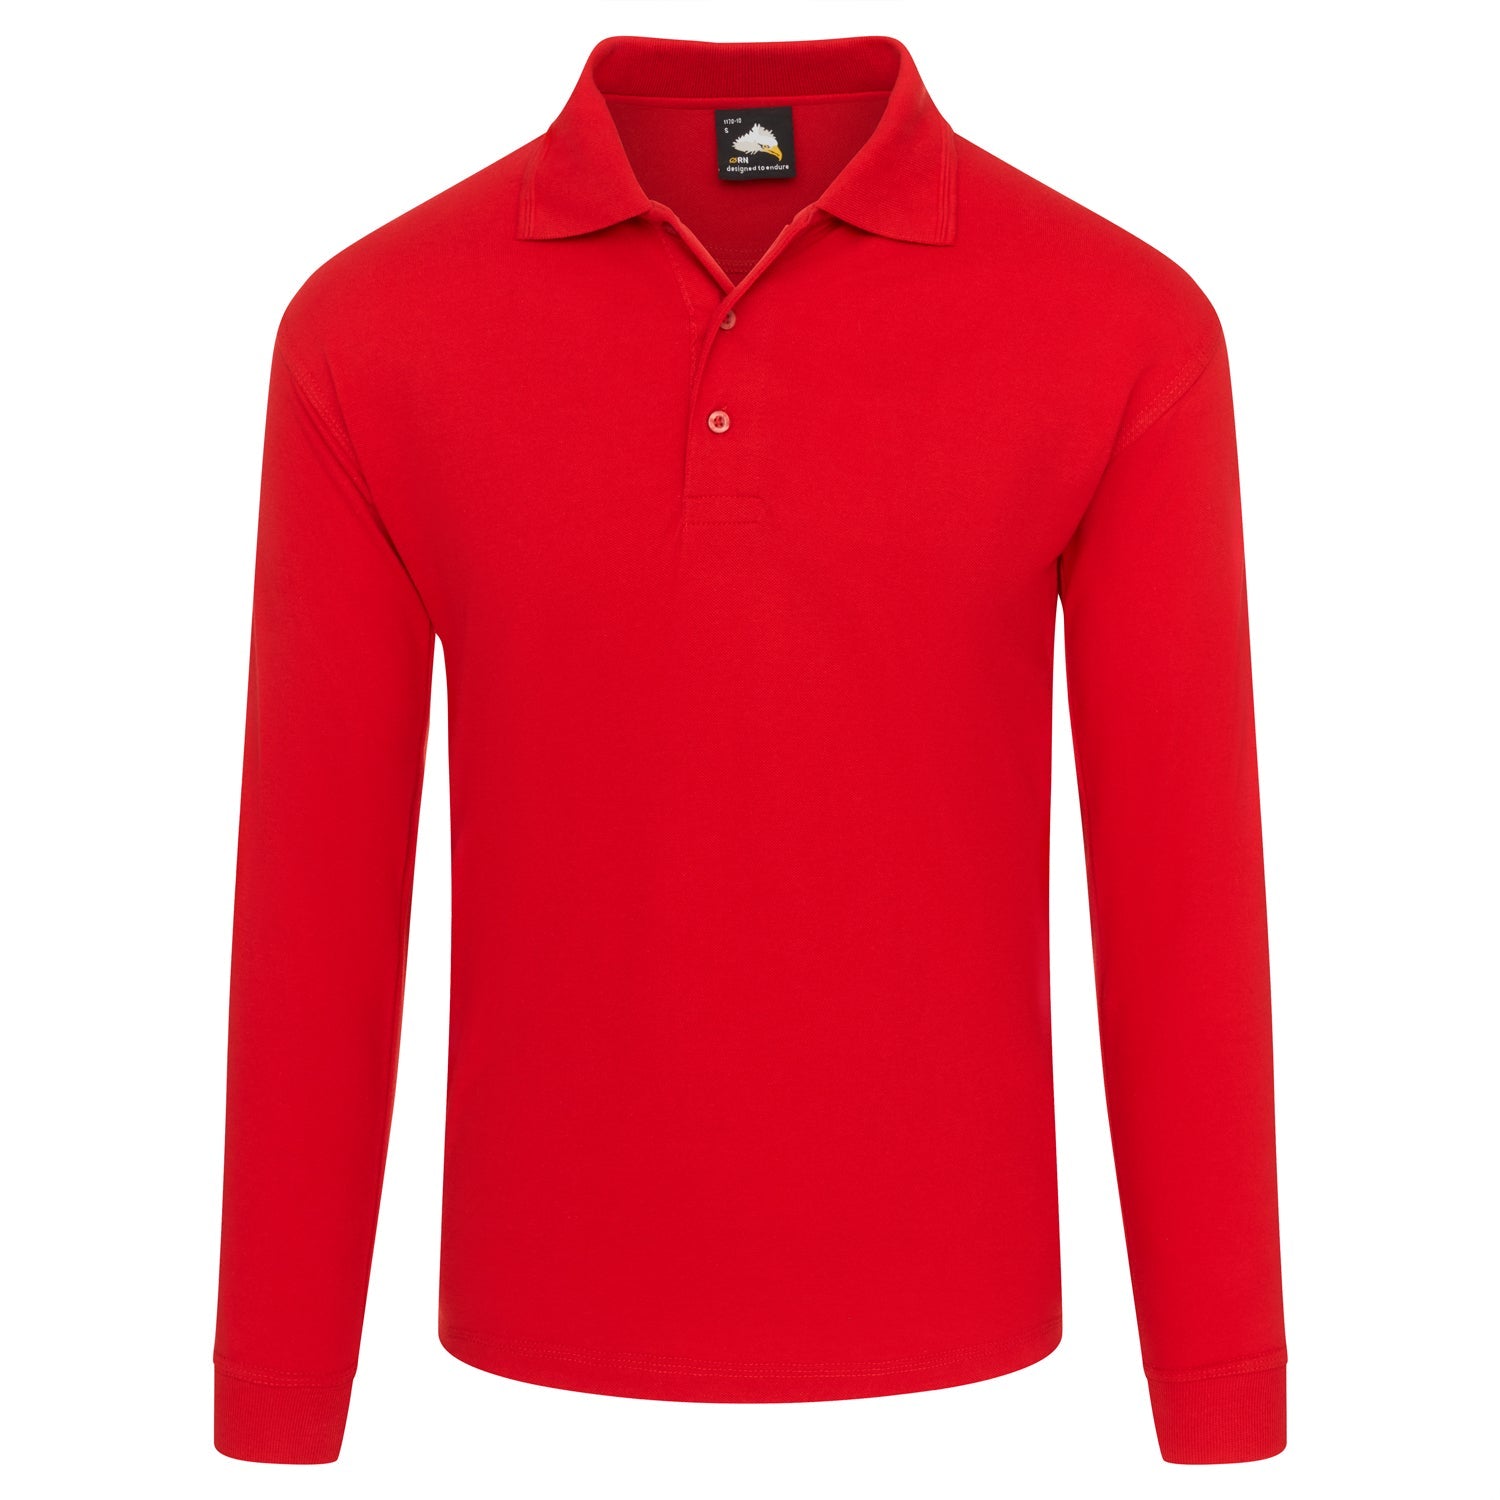 ORN Weaver Long Sleeved Poloshirt - Red